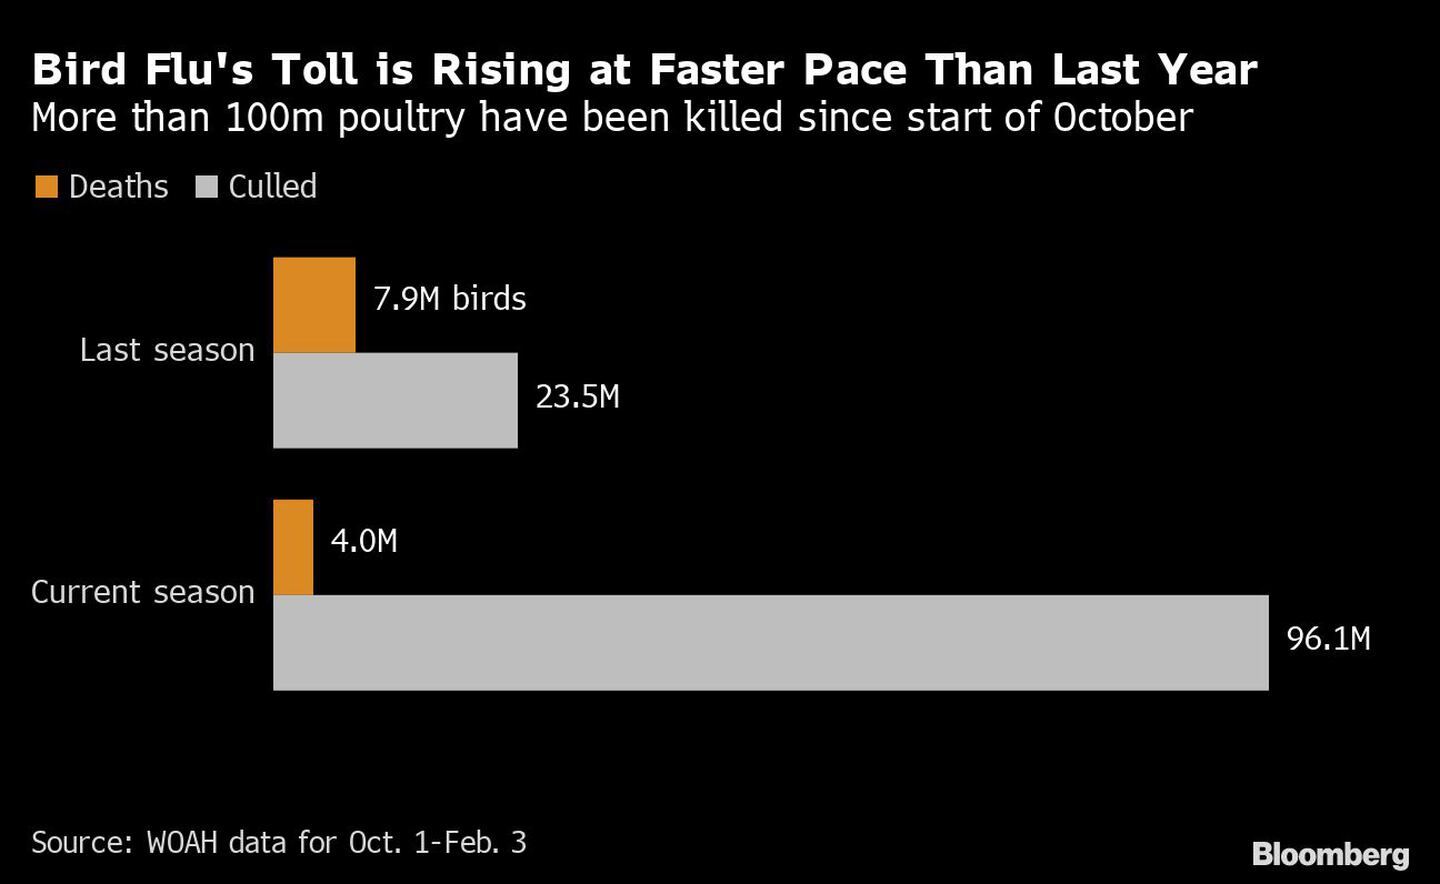 Desde principios de octubre han muerto más de 100 millones de aves de corraldfd